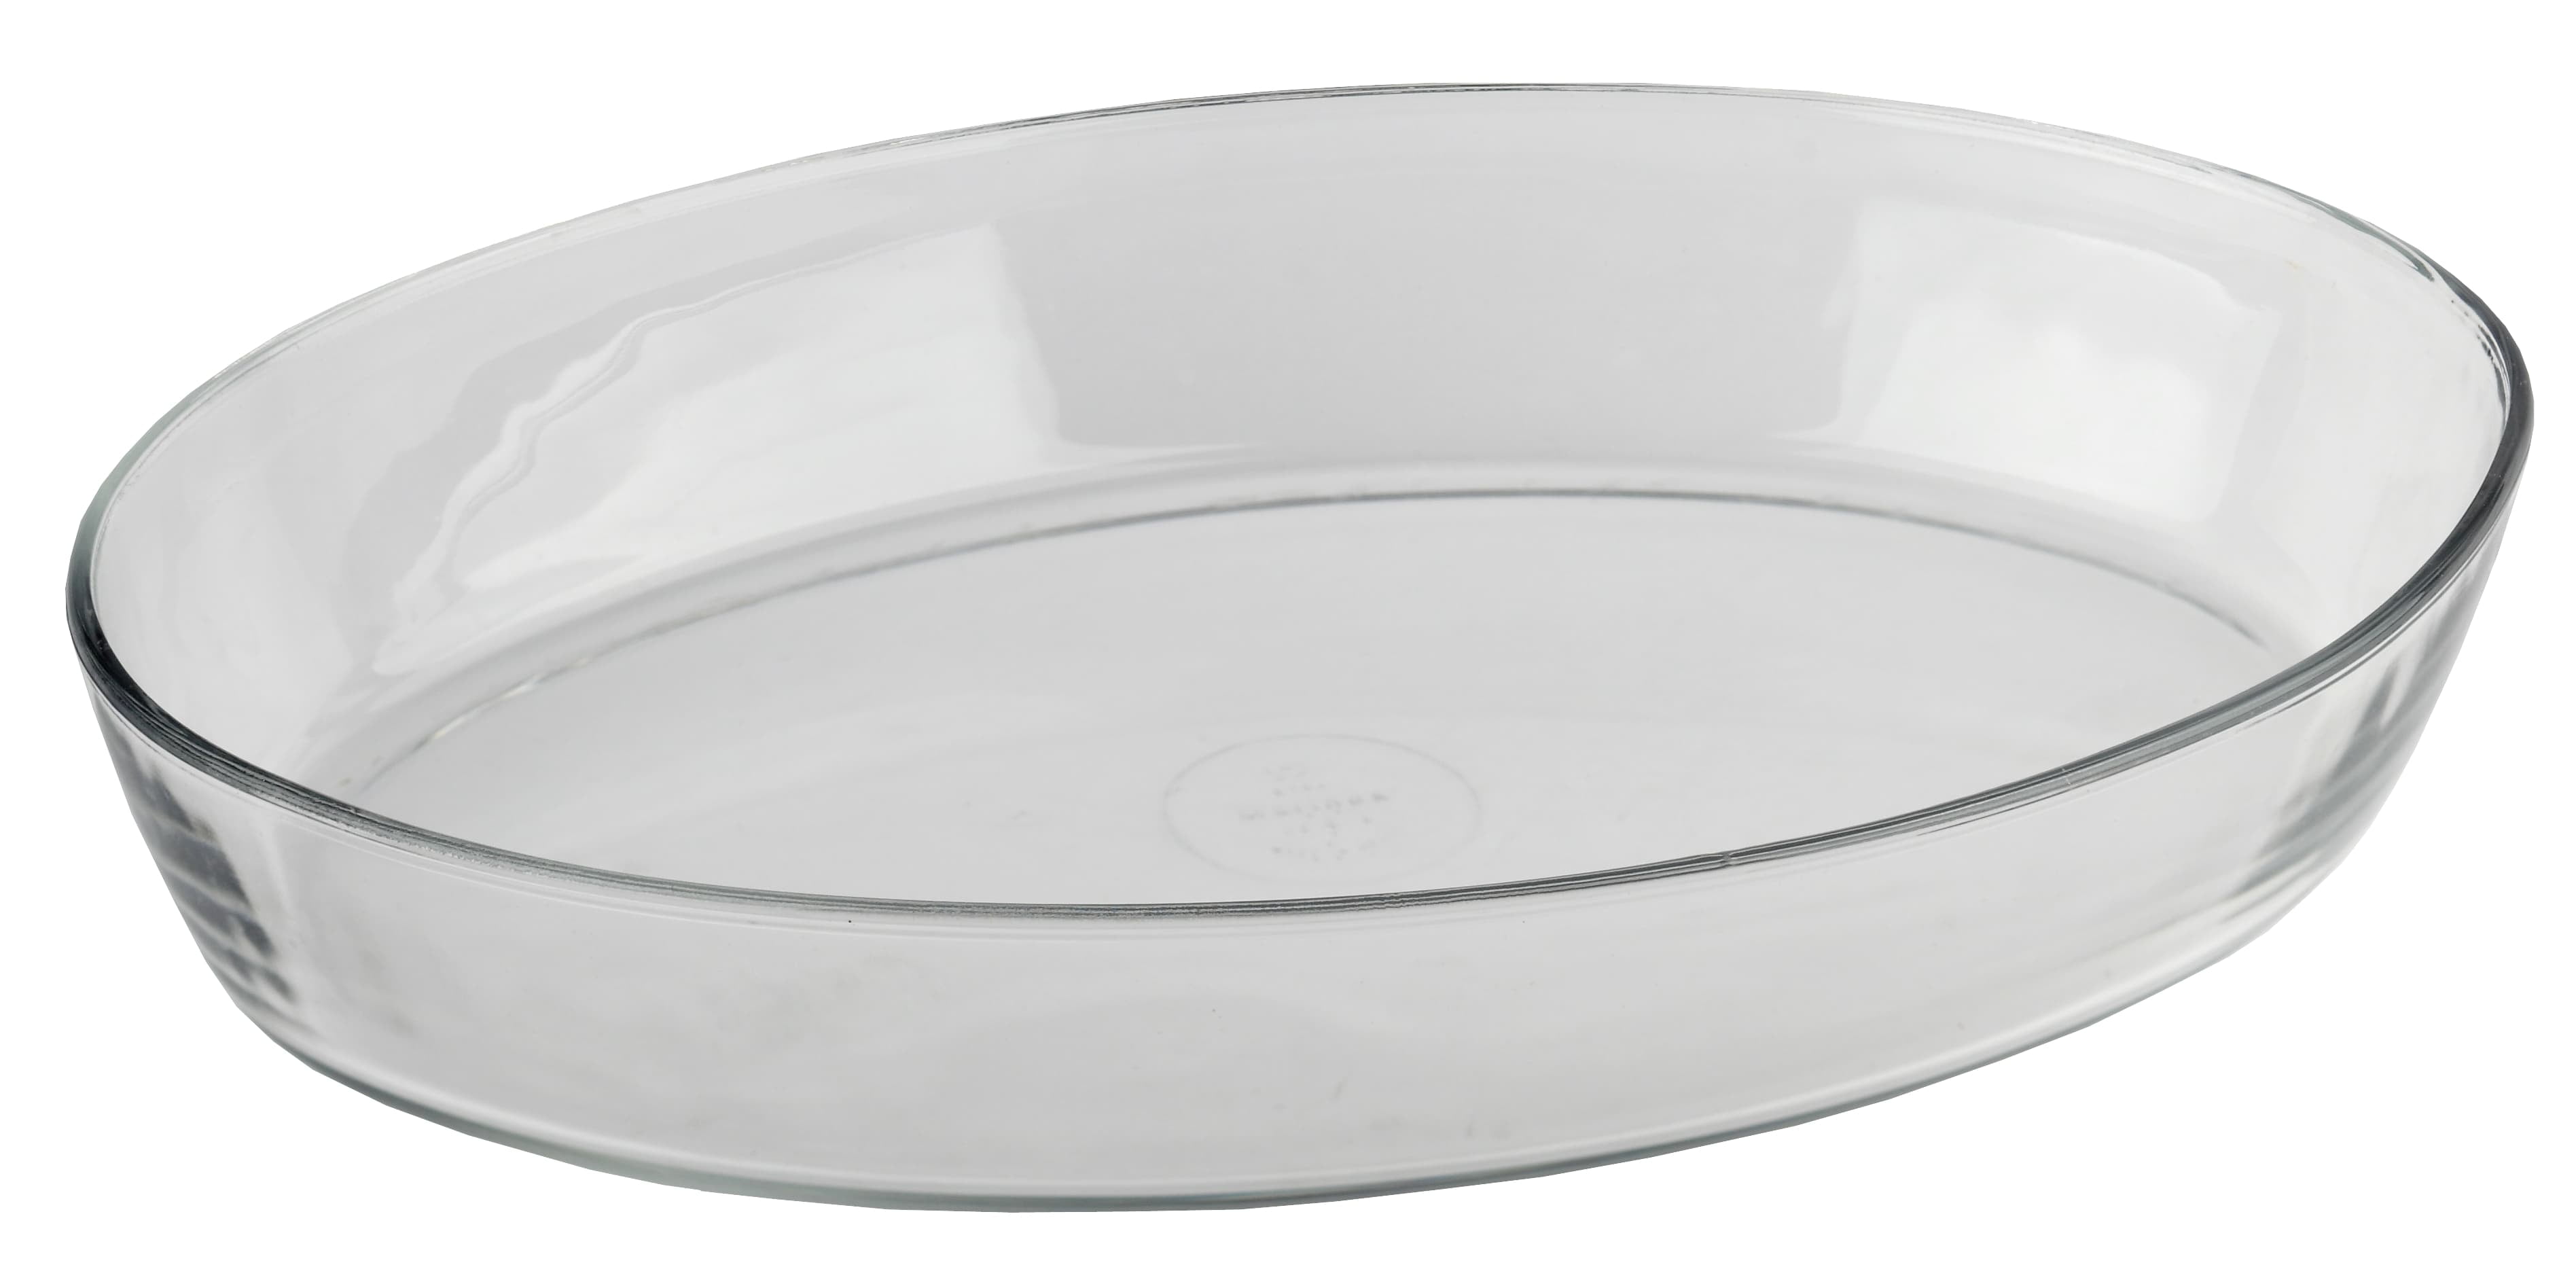 Керамическая посуда для духовки: виды форм, жаровен и горшков для запекания